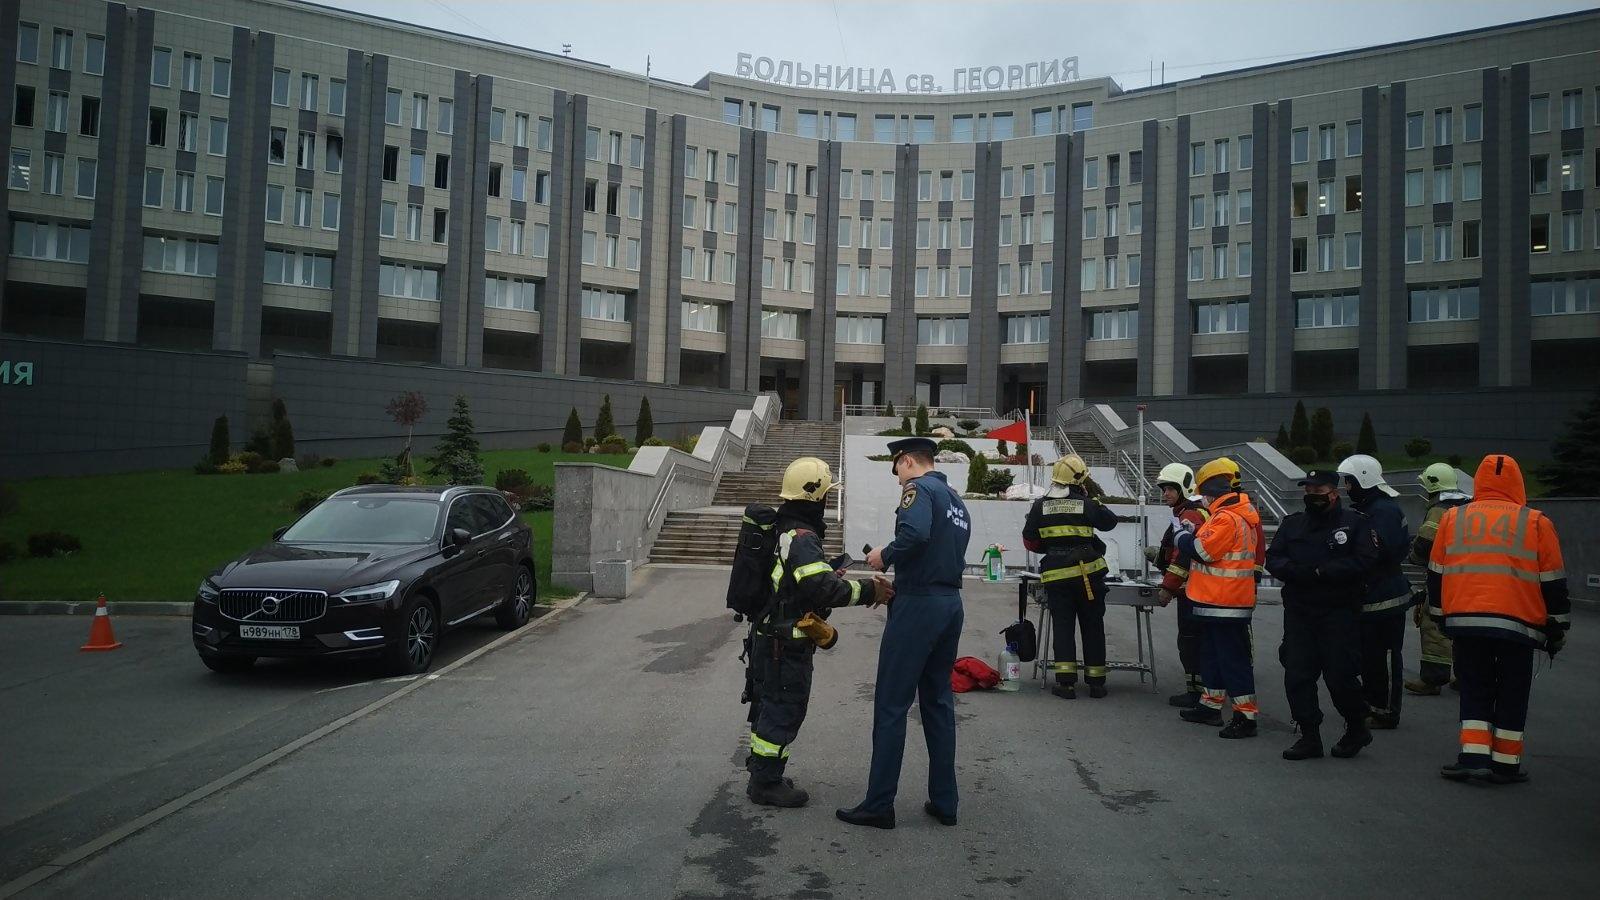 Пожар в реанимации больницы Санкт-Петербурга. Есть погибшие… - фото 1